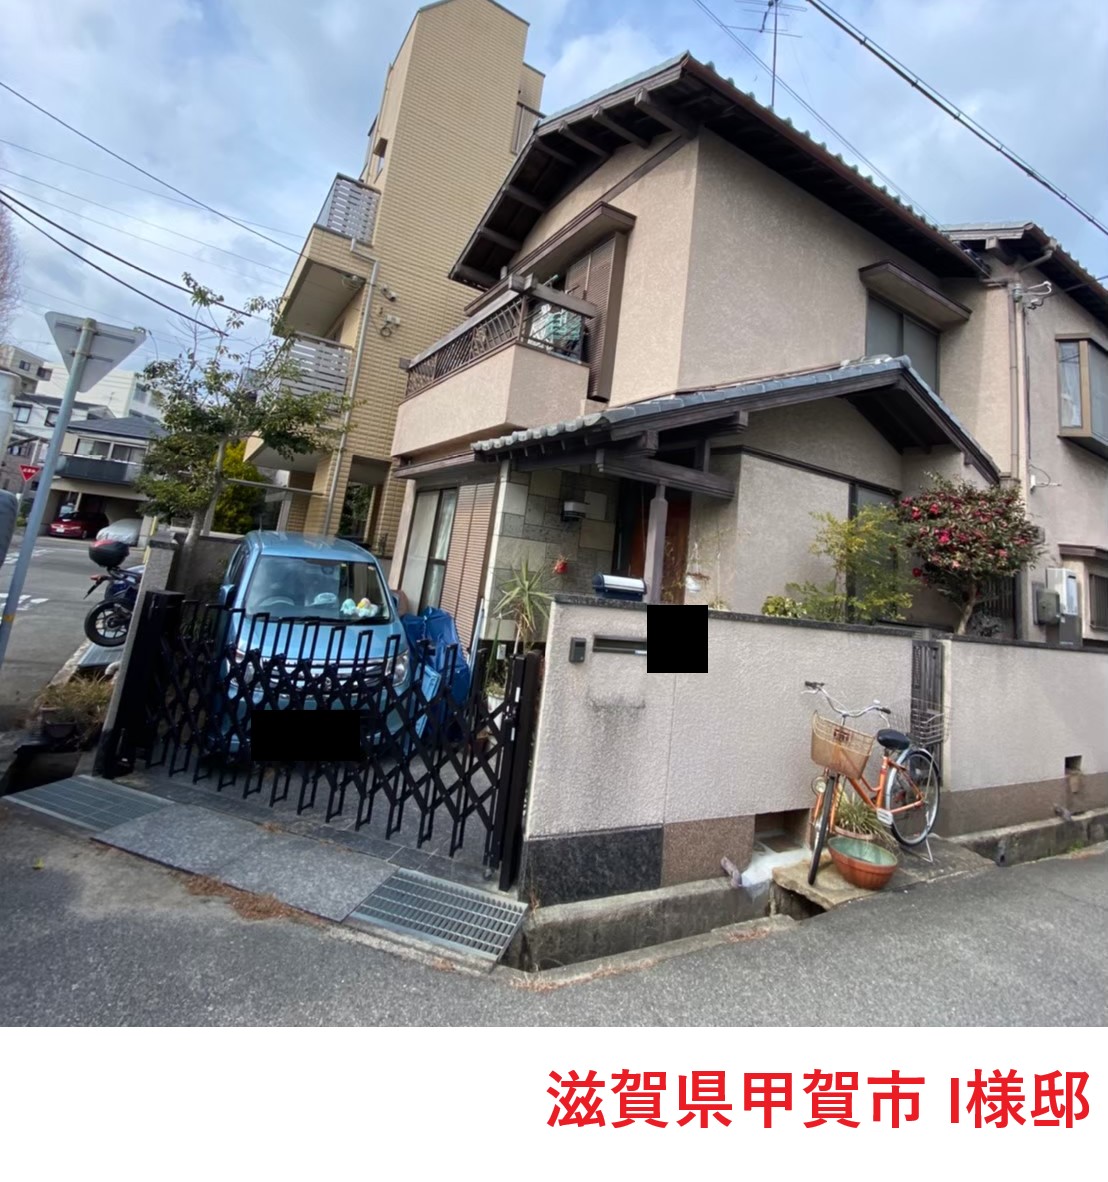 滋賀県甲賀市甲賀町希望が丘で外壁調査と屋根調査を同時に実施致しました